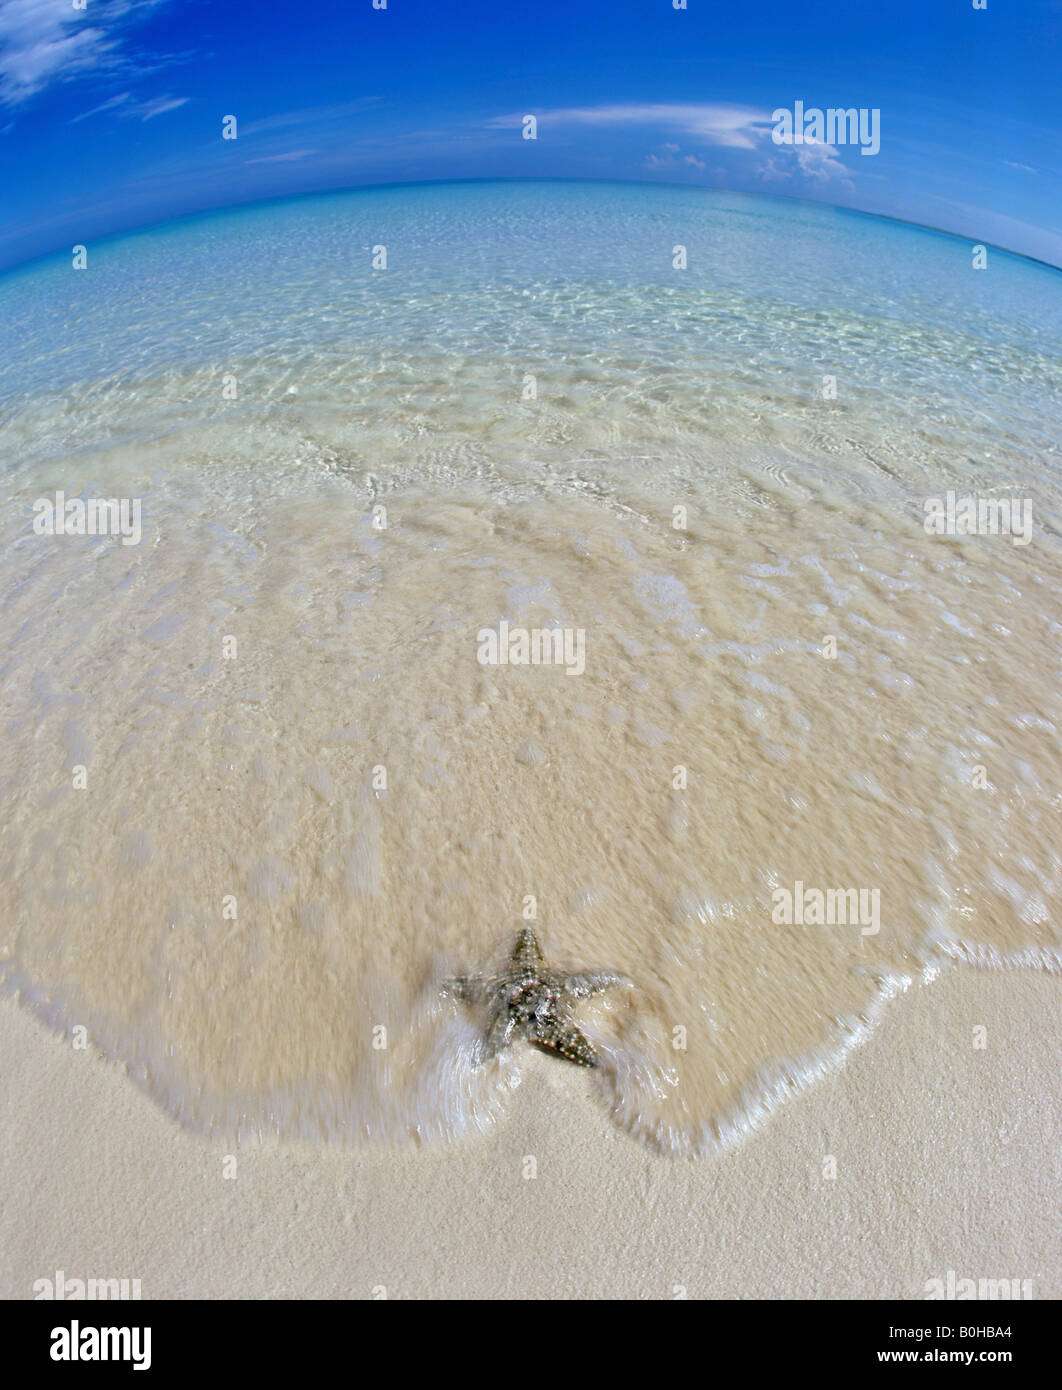 Étoile de mer sur une plage en eau peu profonde, la mer, horizon, fisheye, Maldives, océan Indien Banque D'Images